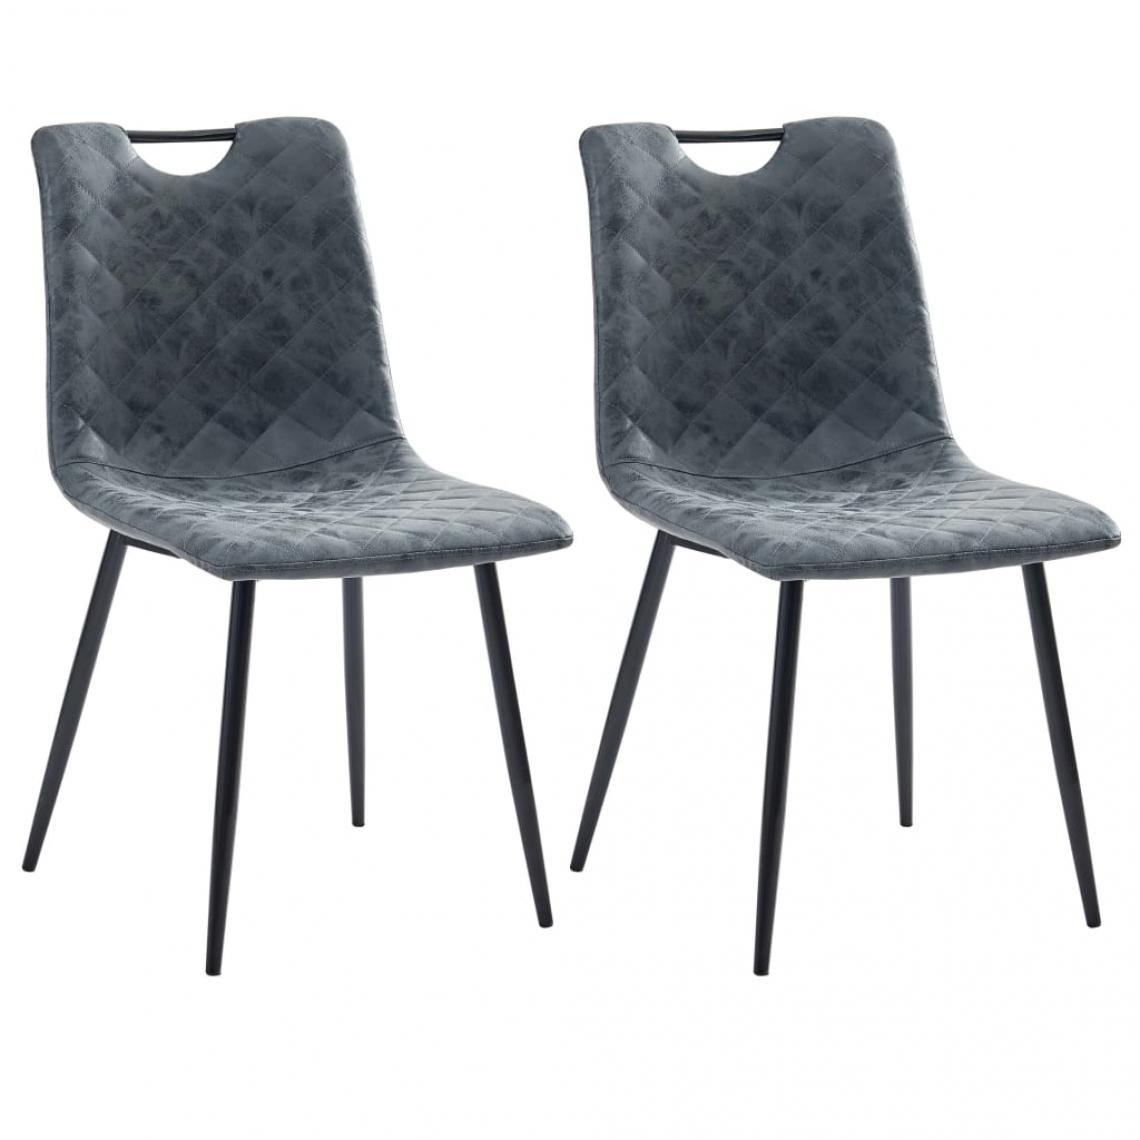 Decoshop26 - Lot de 2 chaises de salle à manger cuisine design moderne similicuir noir CDS020837 - Chaises